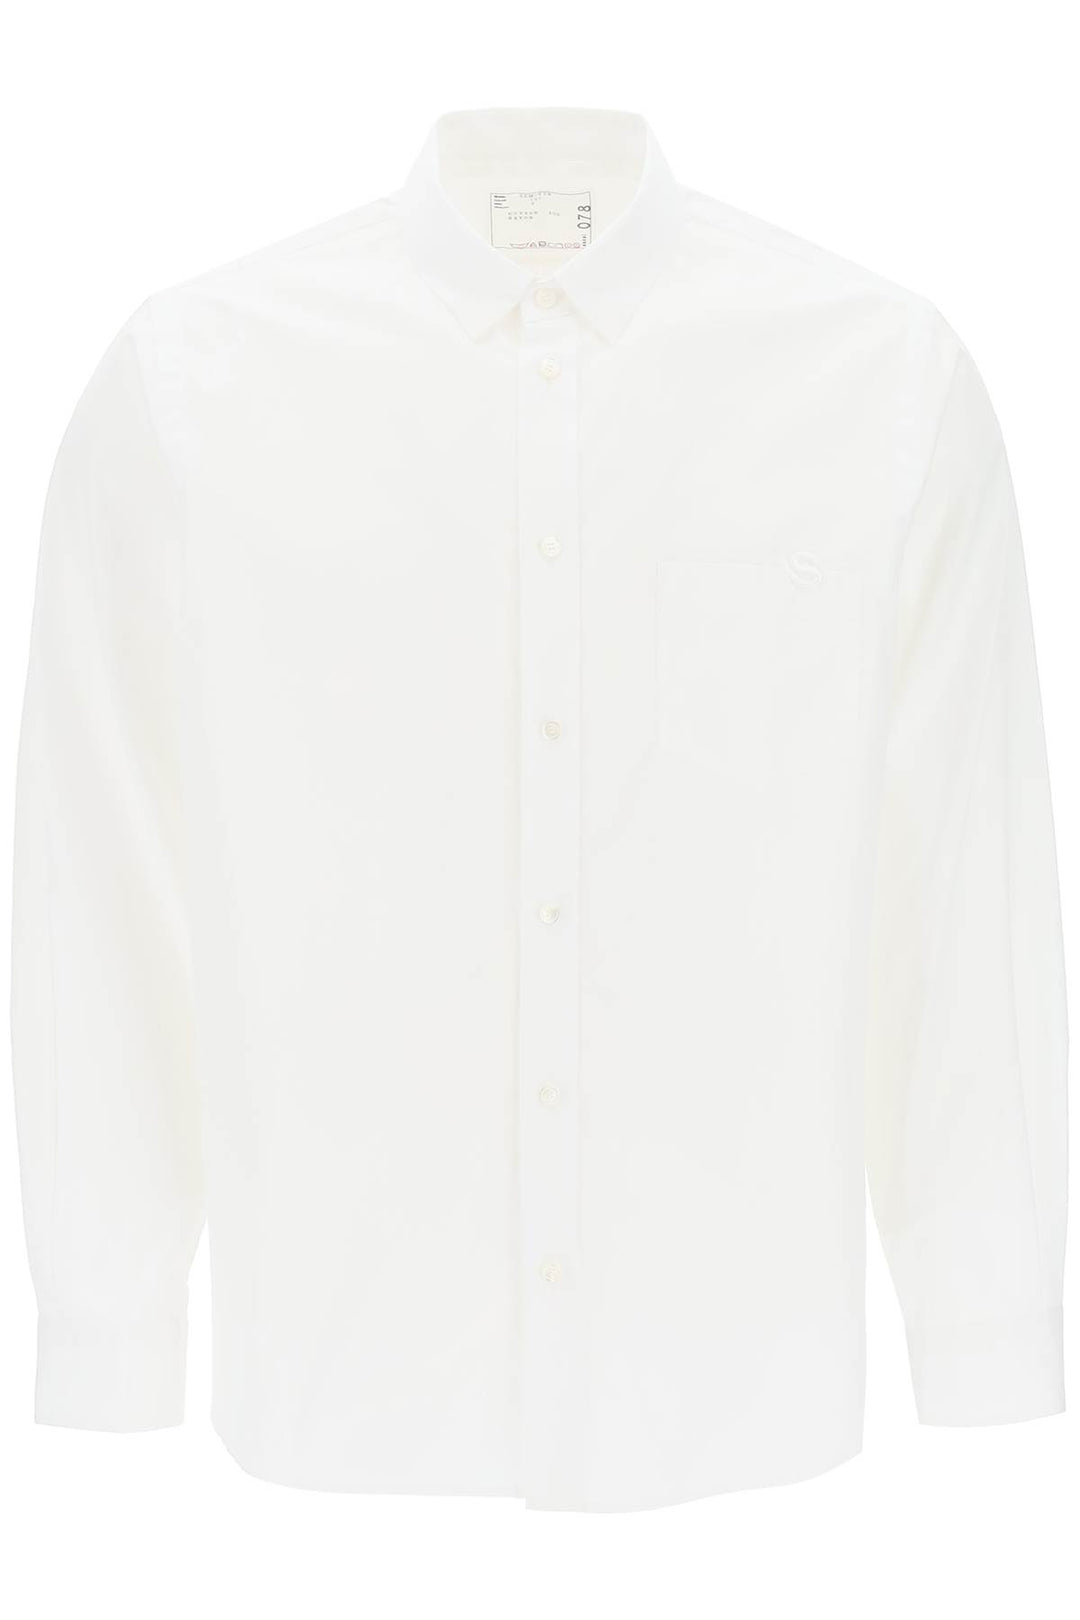 Sacai Thomas Mason Cotton Poplin Shirt   Bianco